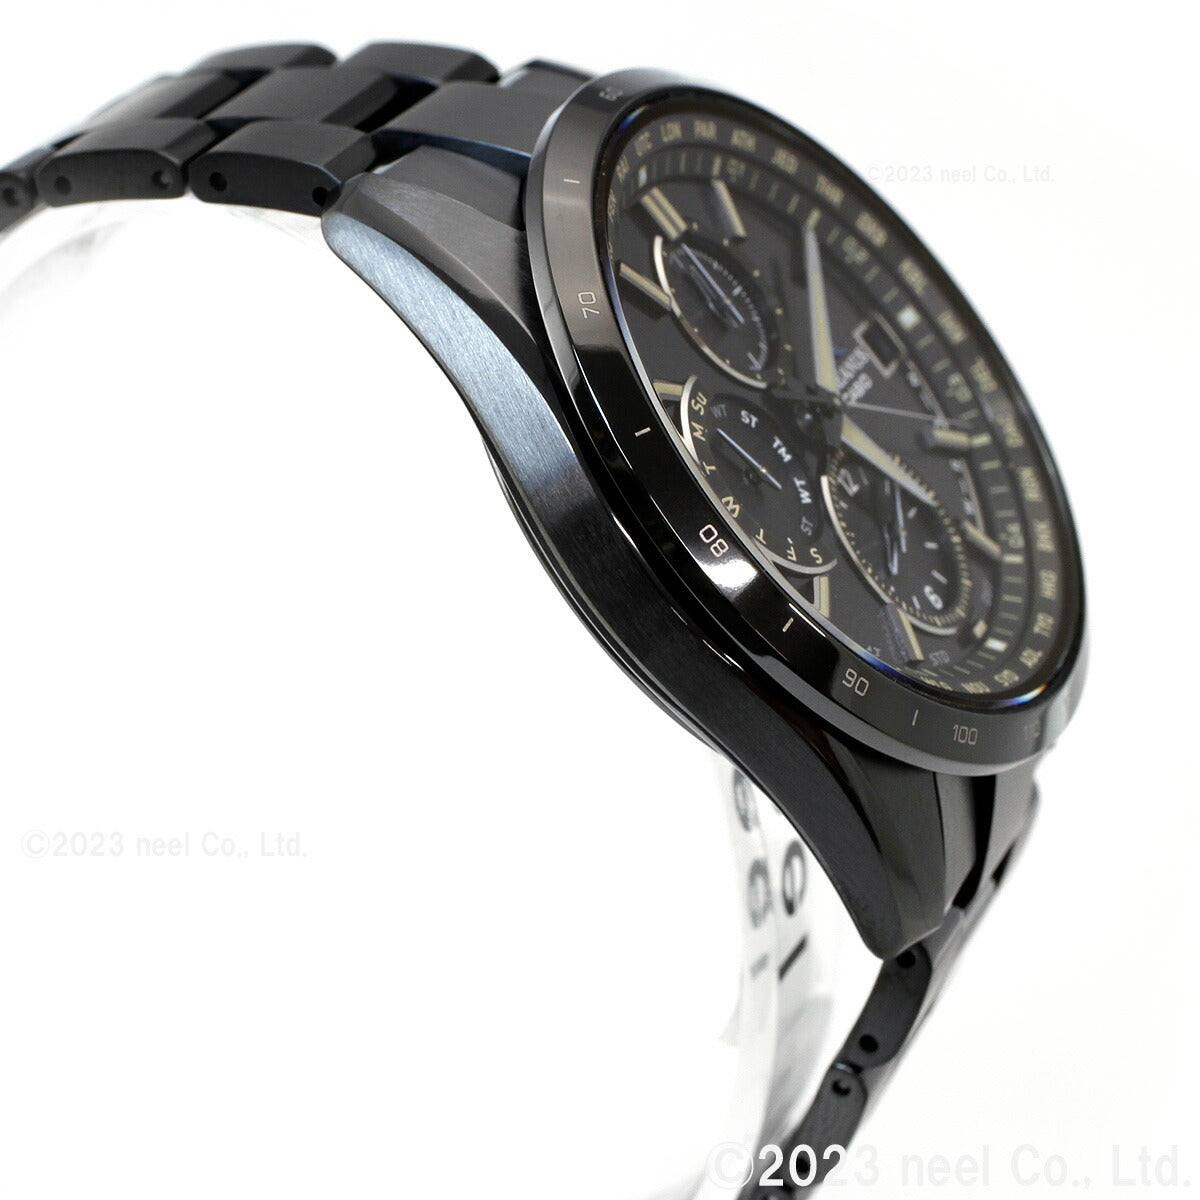 カシオ オシアナス 電波 ソーラー 腕時計 メンズ タフソーラー CASIO OCEANUS CLASSIC LINE OCW-T2600JB-1AJF